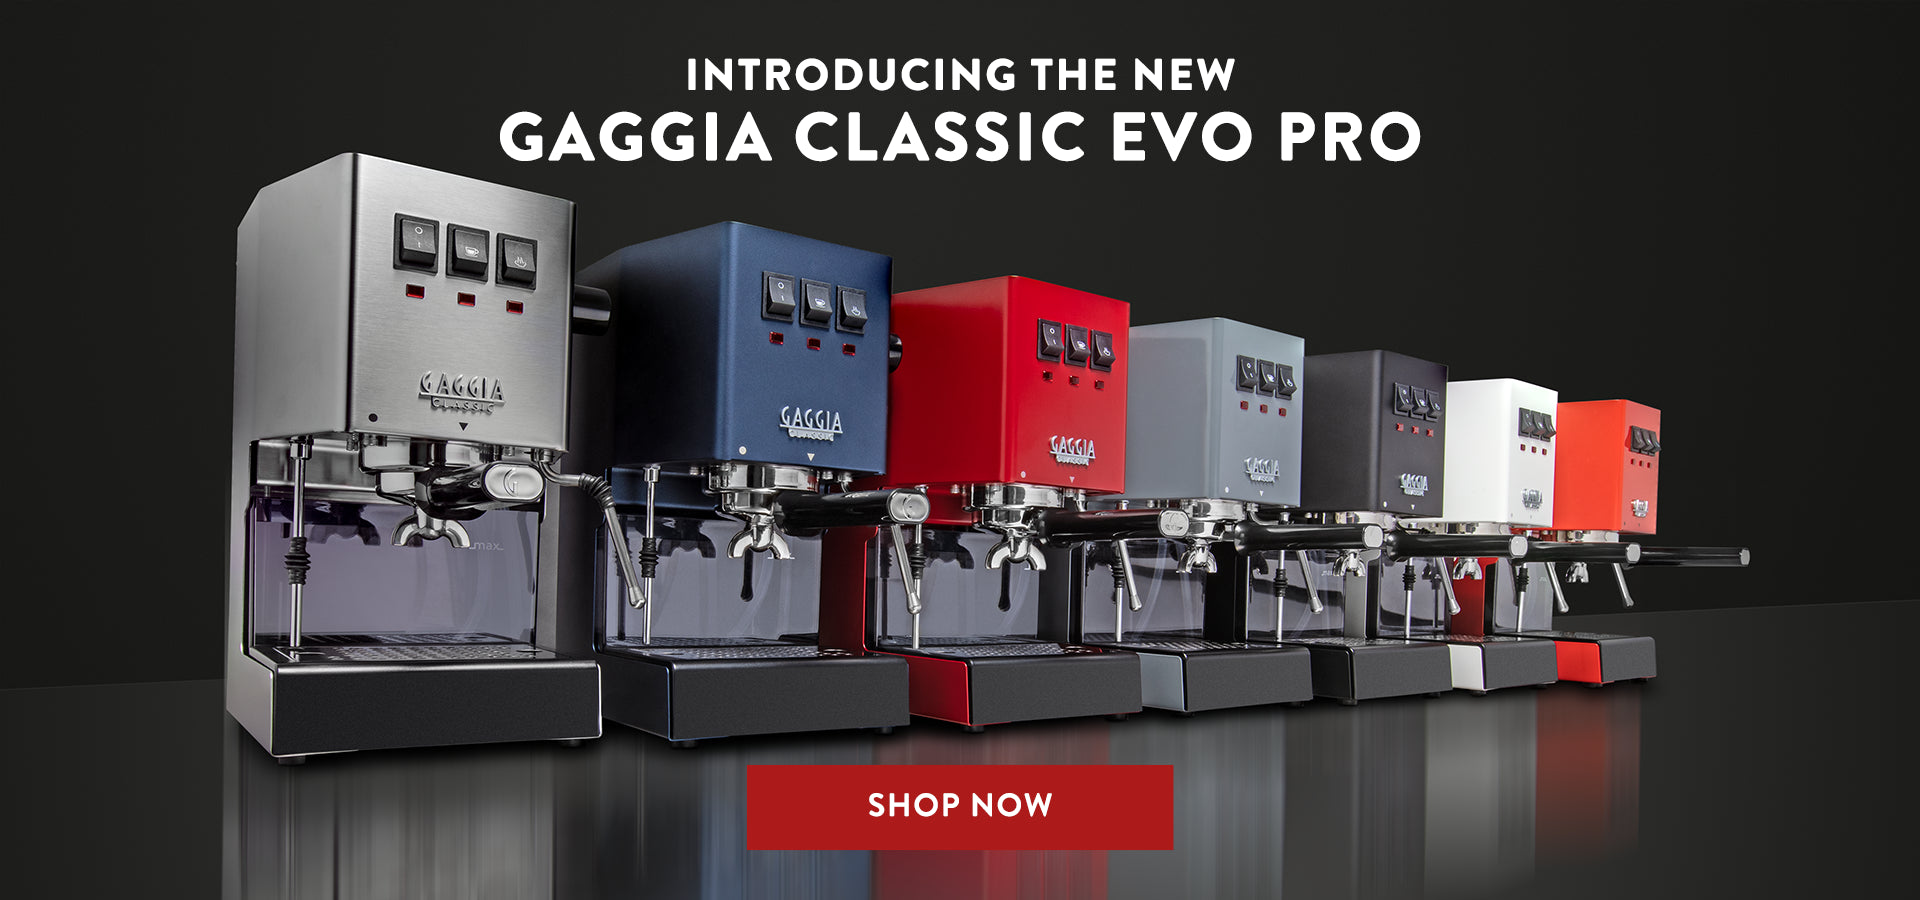 Machine à café espresso Gaggia New Classic RI9480/11 + 1 kg Café